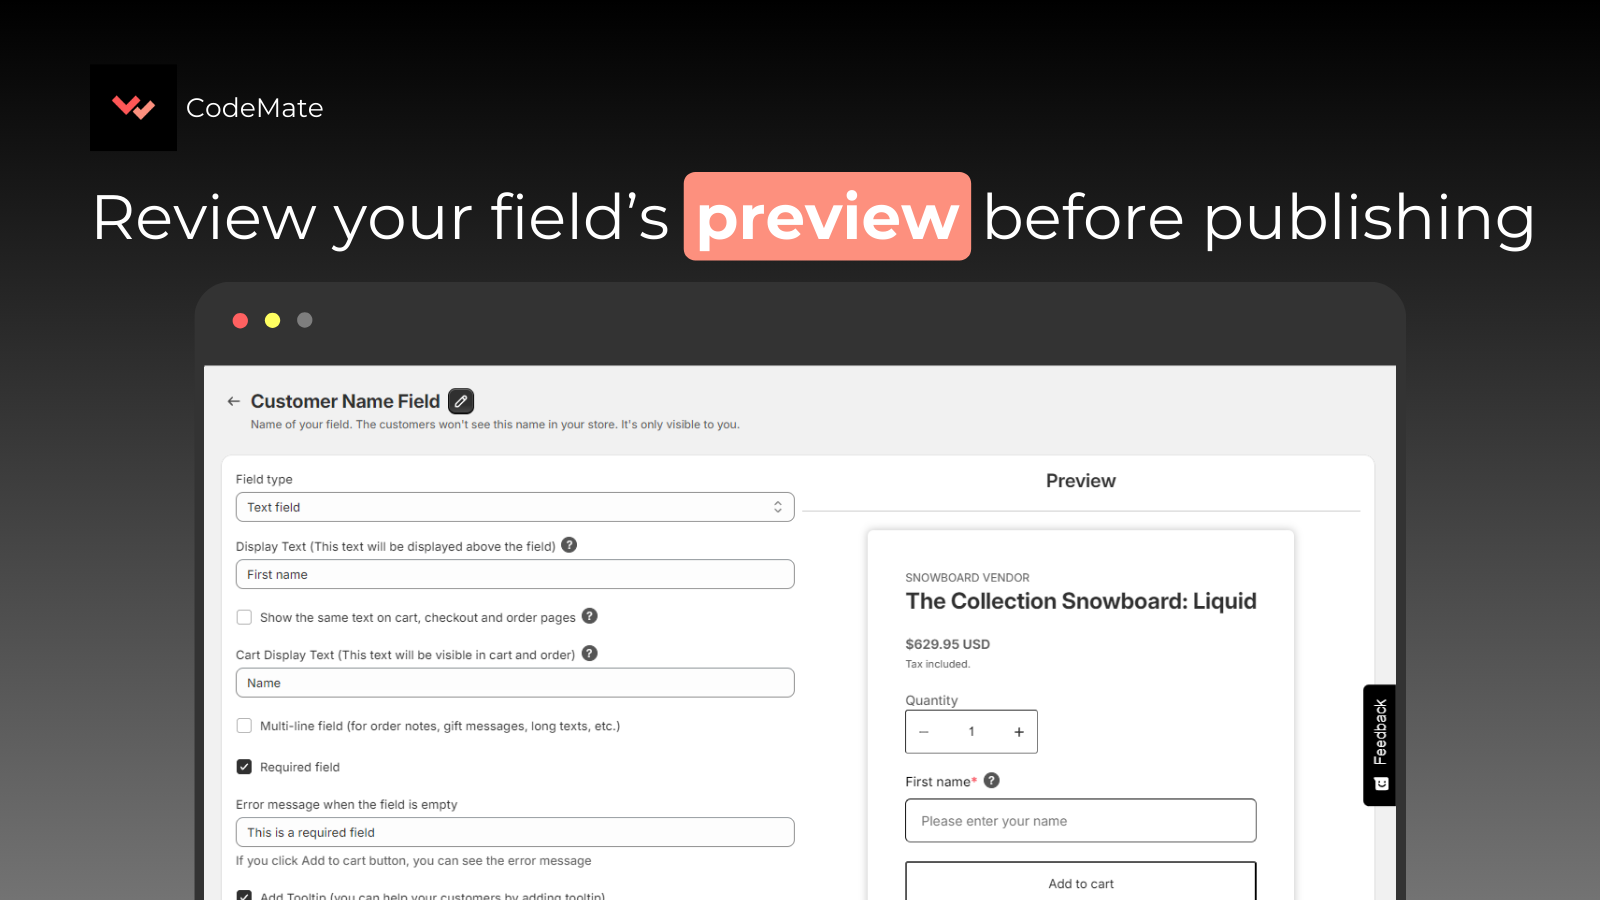 customize fields, personalized fields, image upload, order field